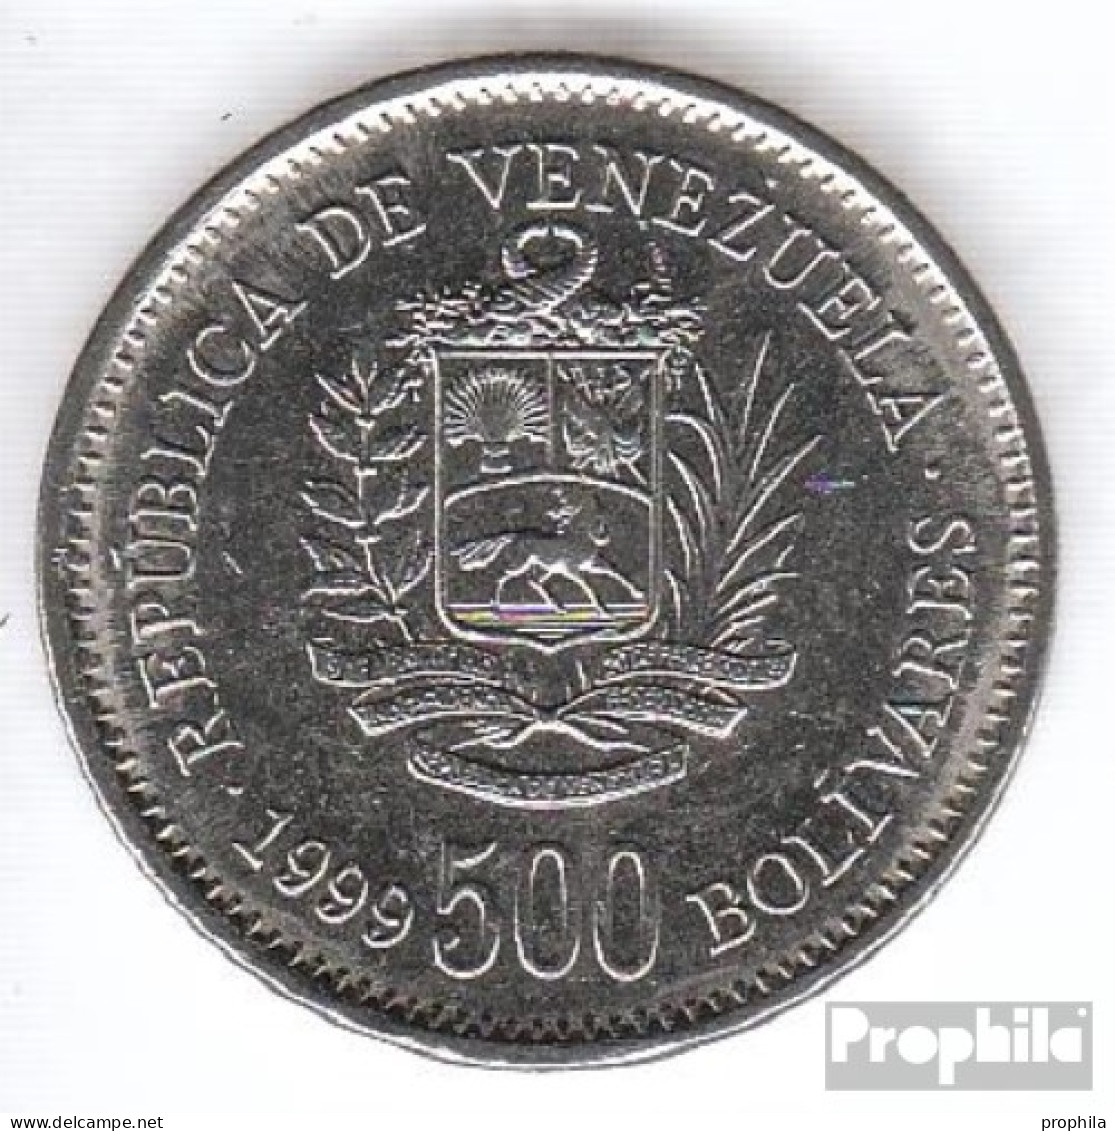 Venezuela KM-Nr. : 79 1999 Vorzüglich Stahl, Nickel Plattiert Vorzüglich 1999 500 Bolivares Wappen - Venezuela